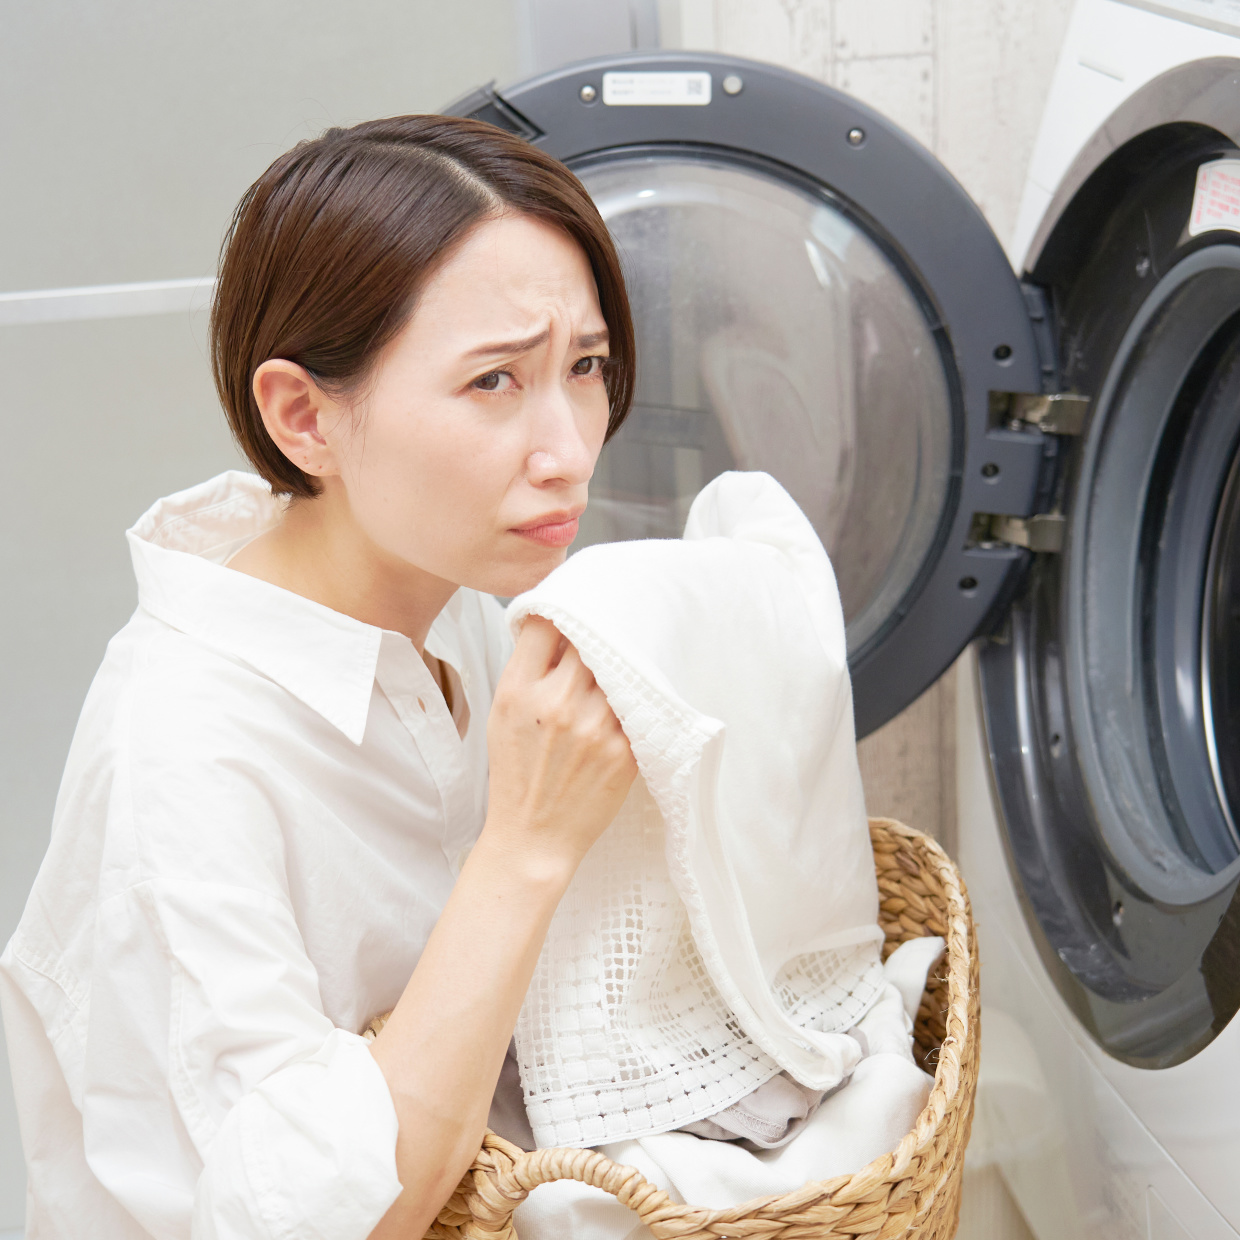  洗濯槽だけじゃない。「洗濯機」の汚れが溜まっている“意外な場所”【知って得する掃除術】 